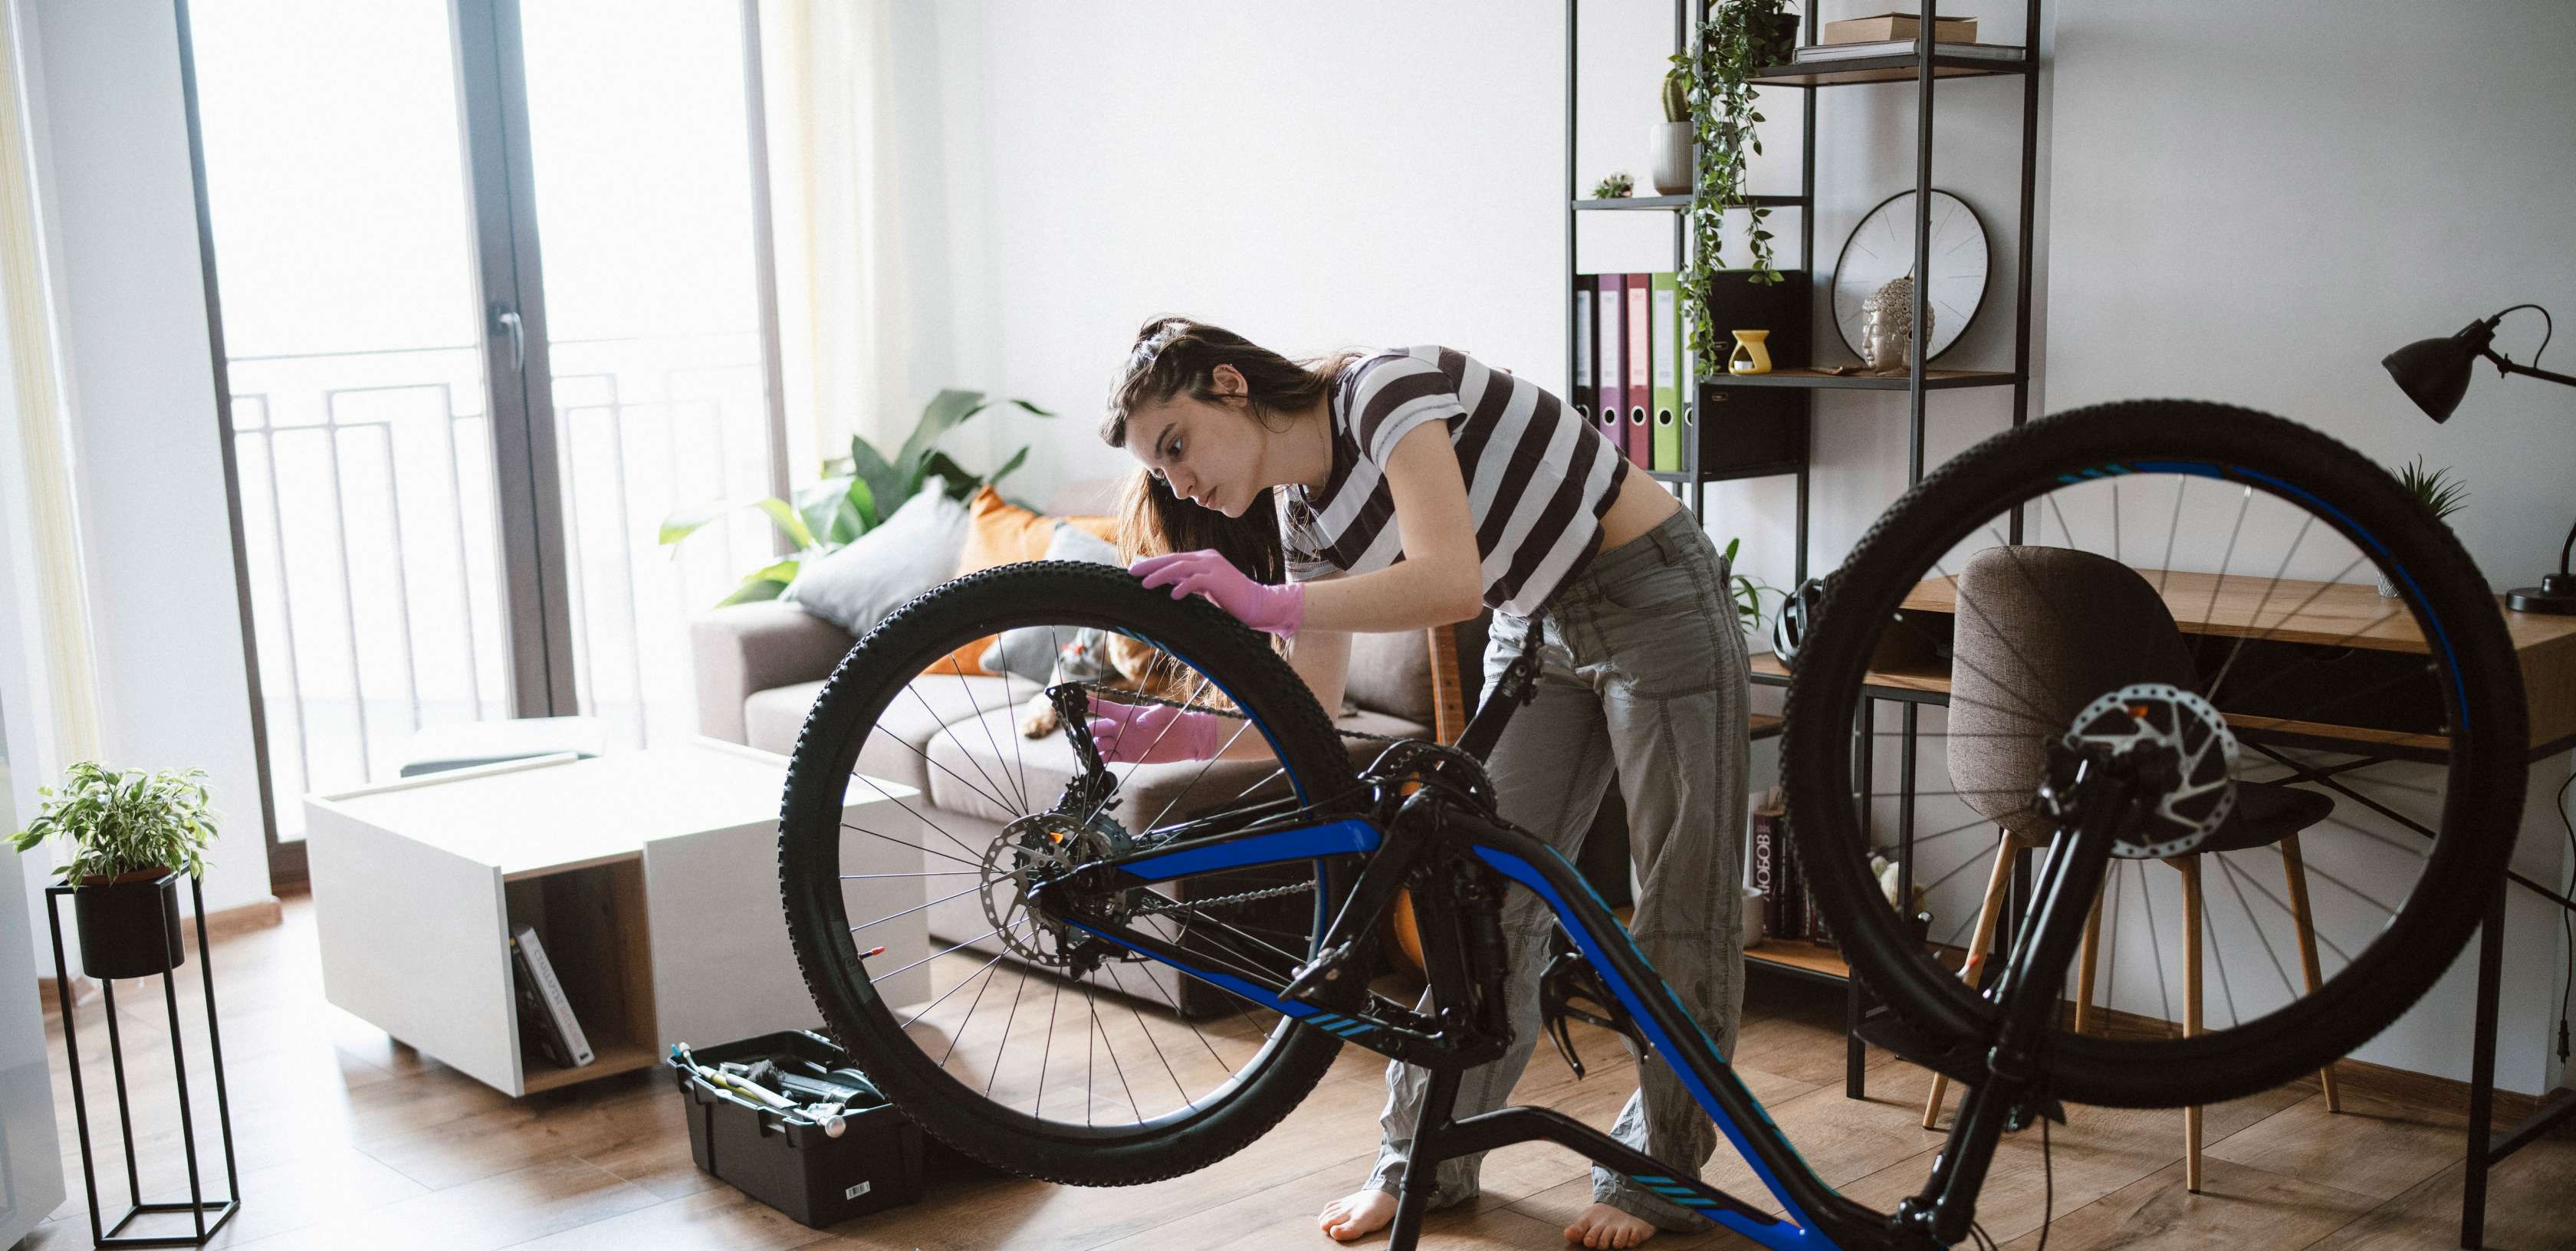 Gegenstandsschutz: Junge Frau repariert ein Fahrrad in ihrer Wohnung